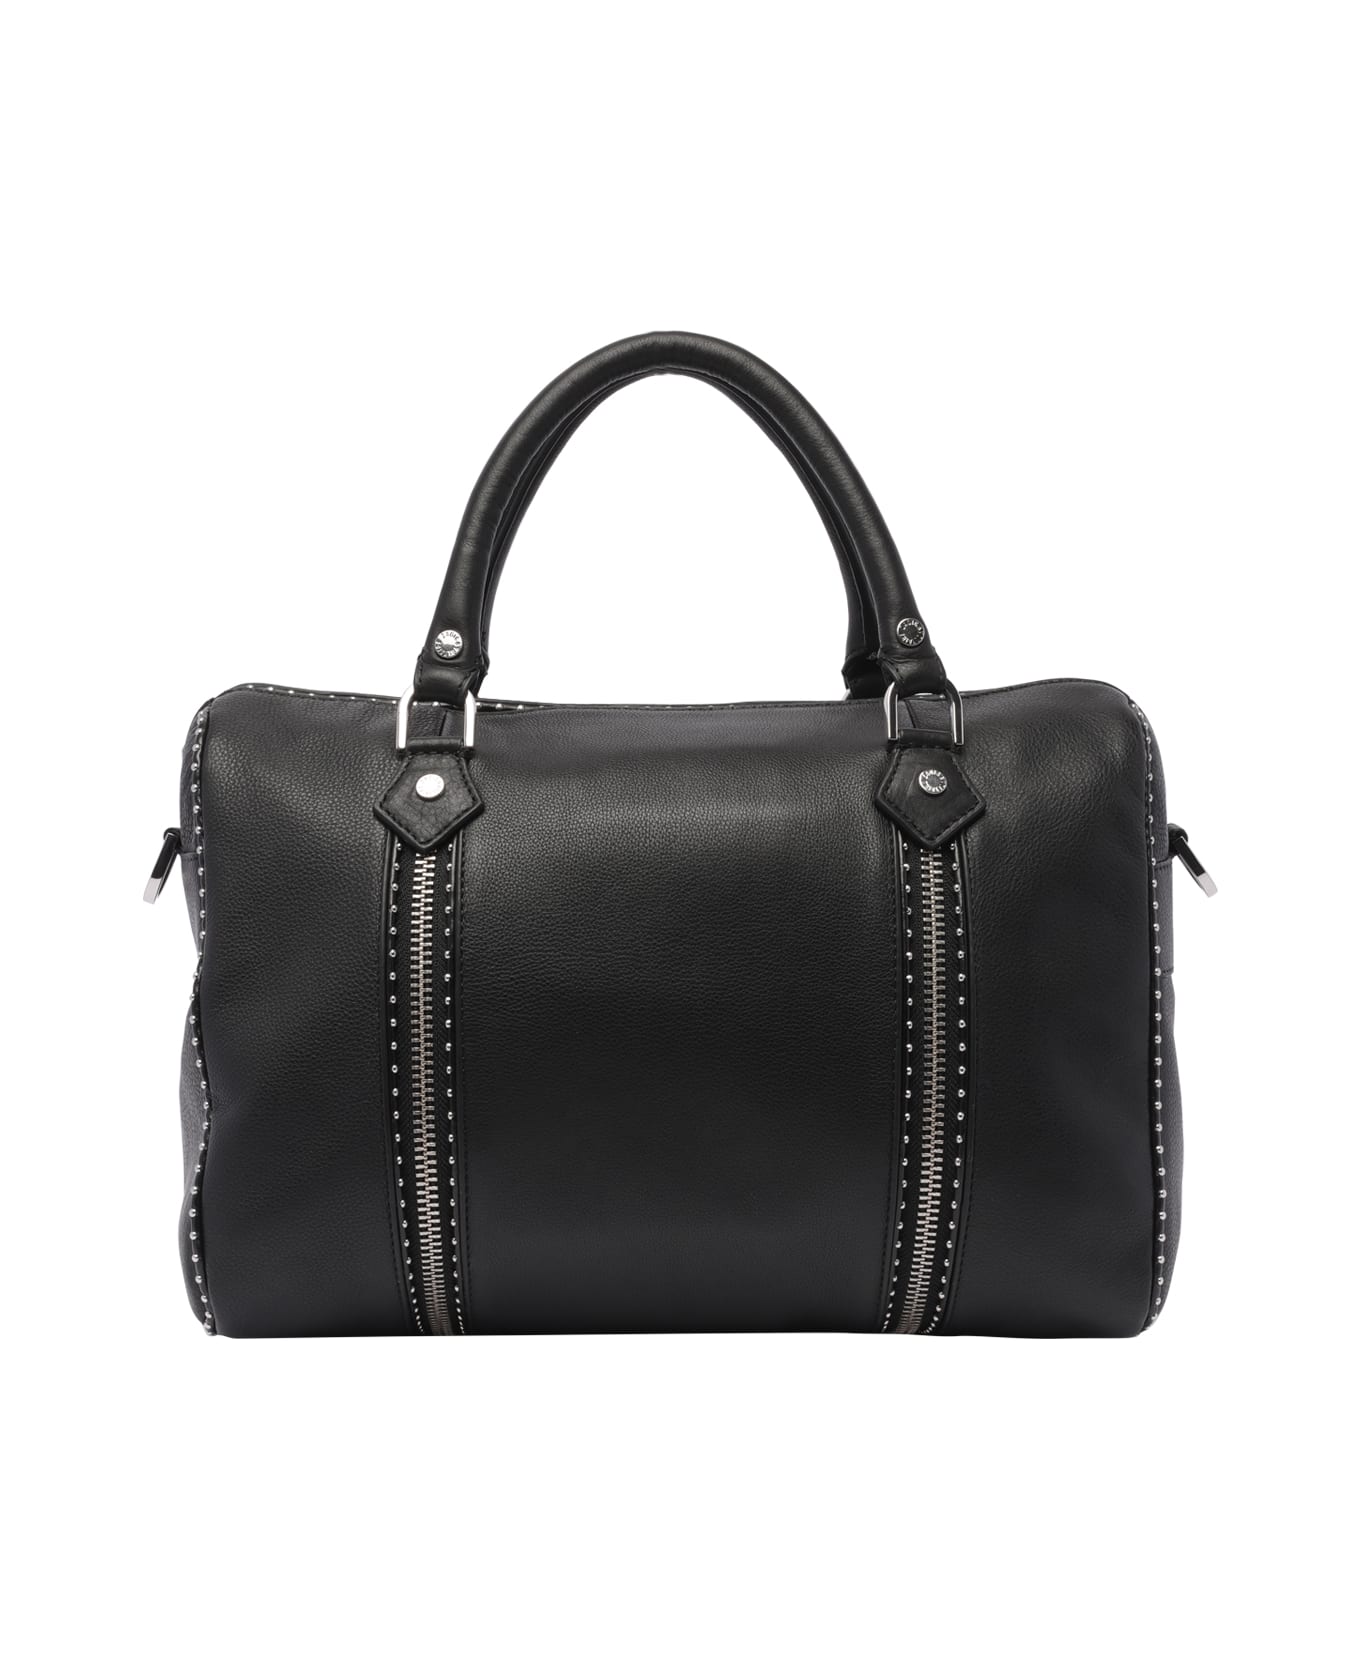 Zadig & Voltaire Medium Sunny Handbag - Black